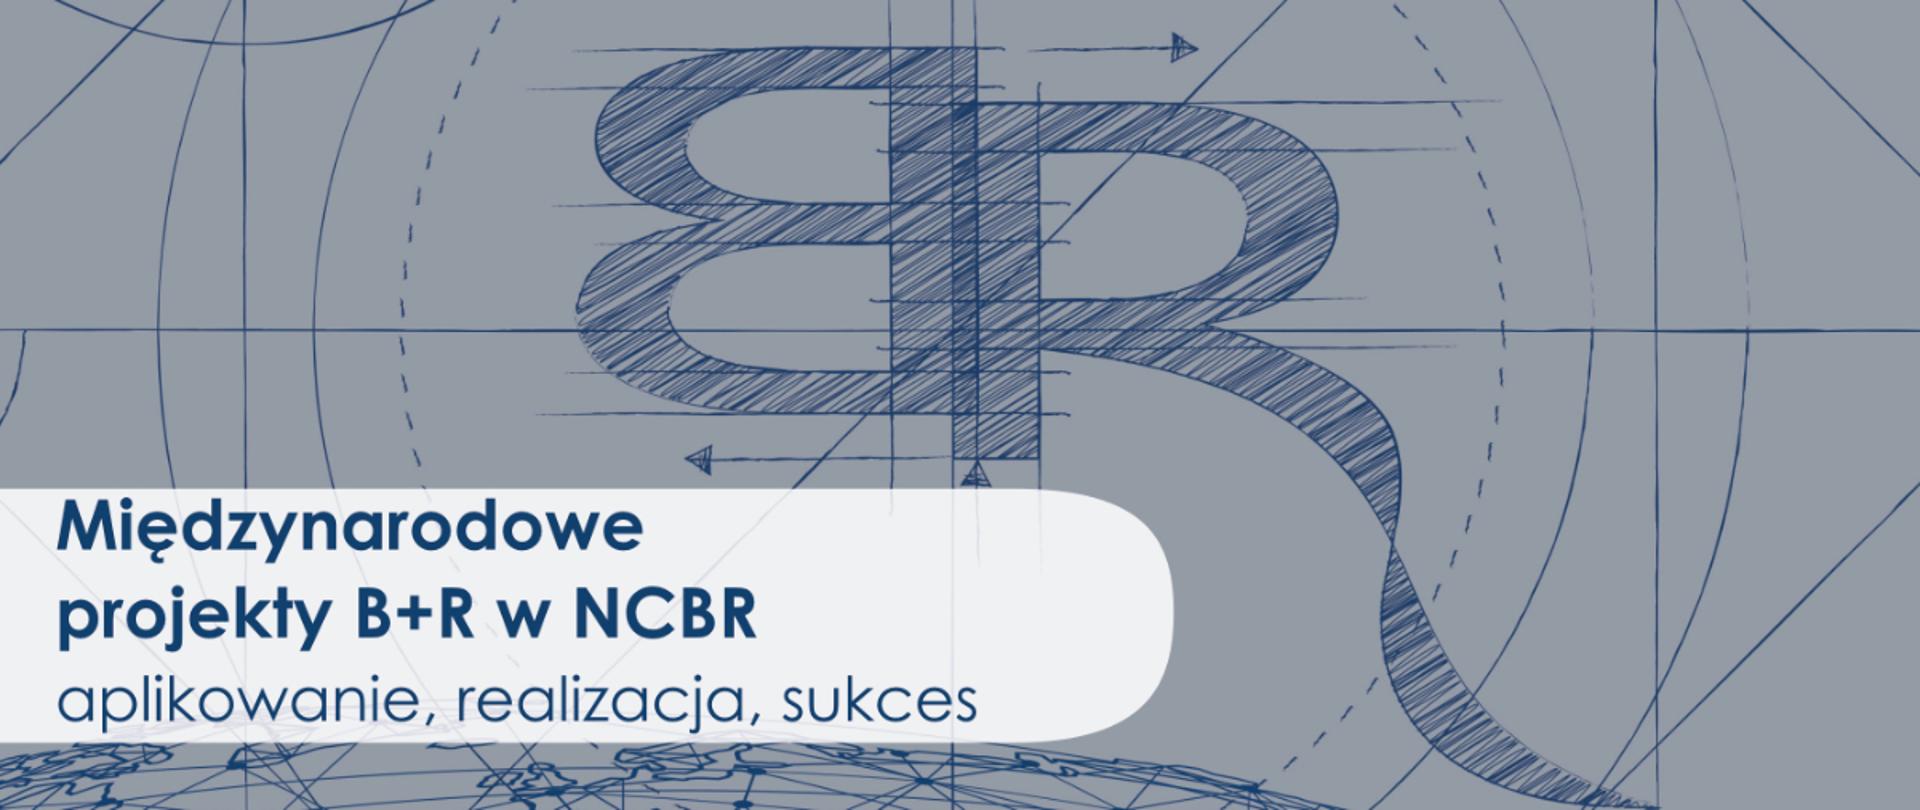 Międzynarodowe projekty B+R w NCBR – aplikowanie, realizacja, sukces